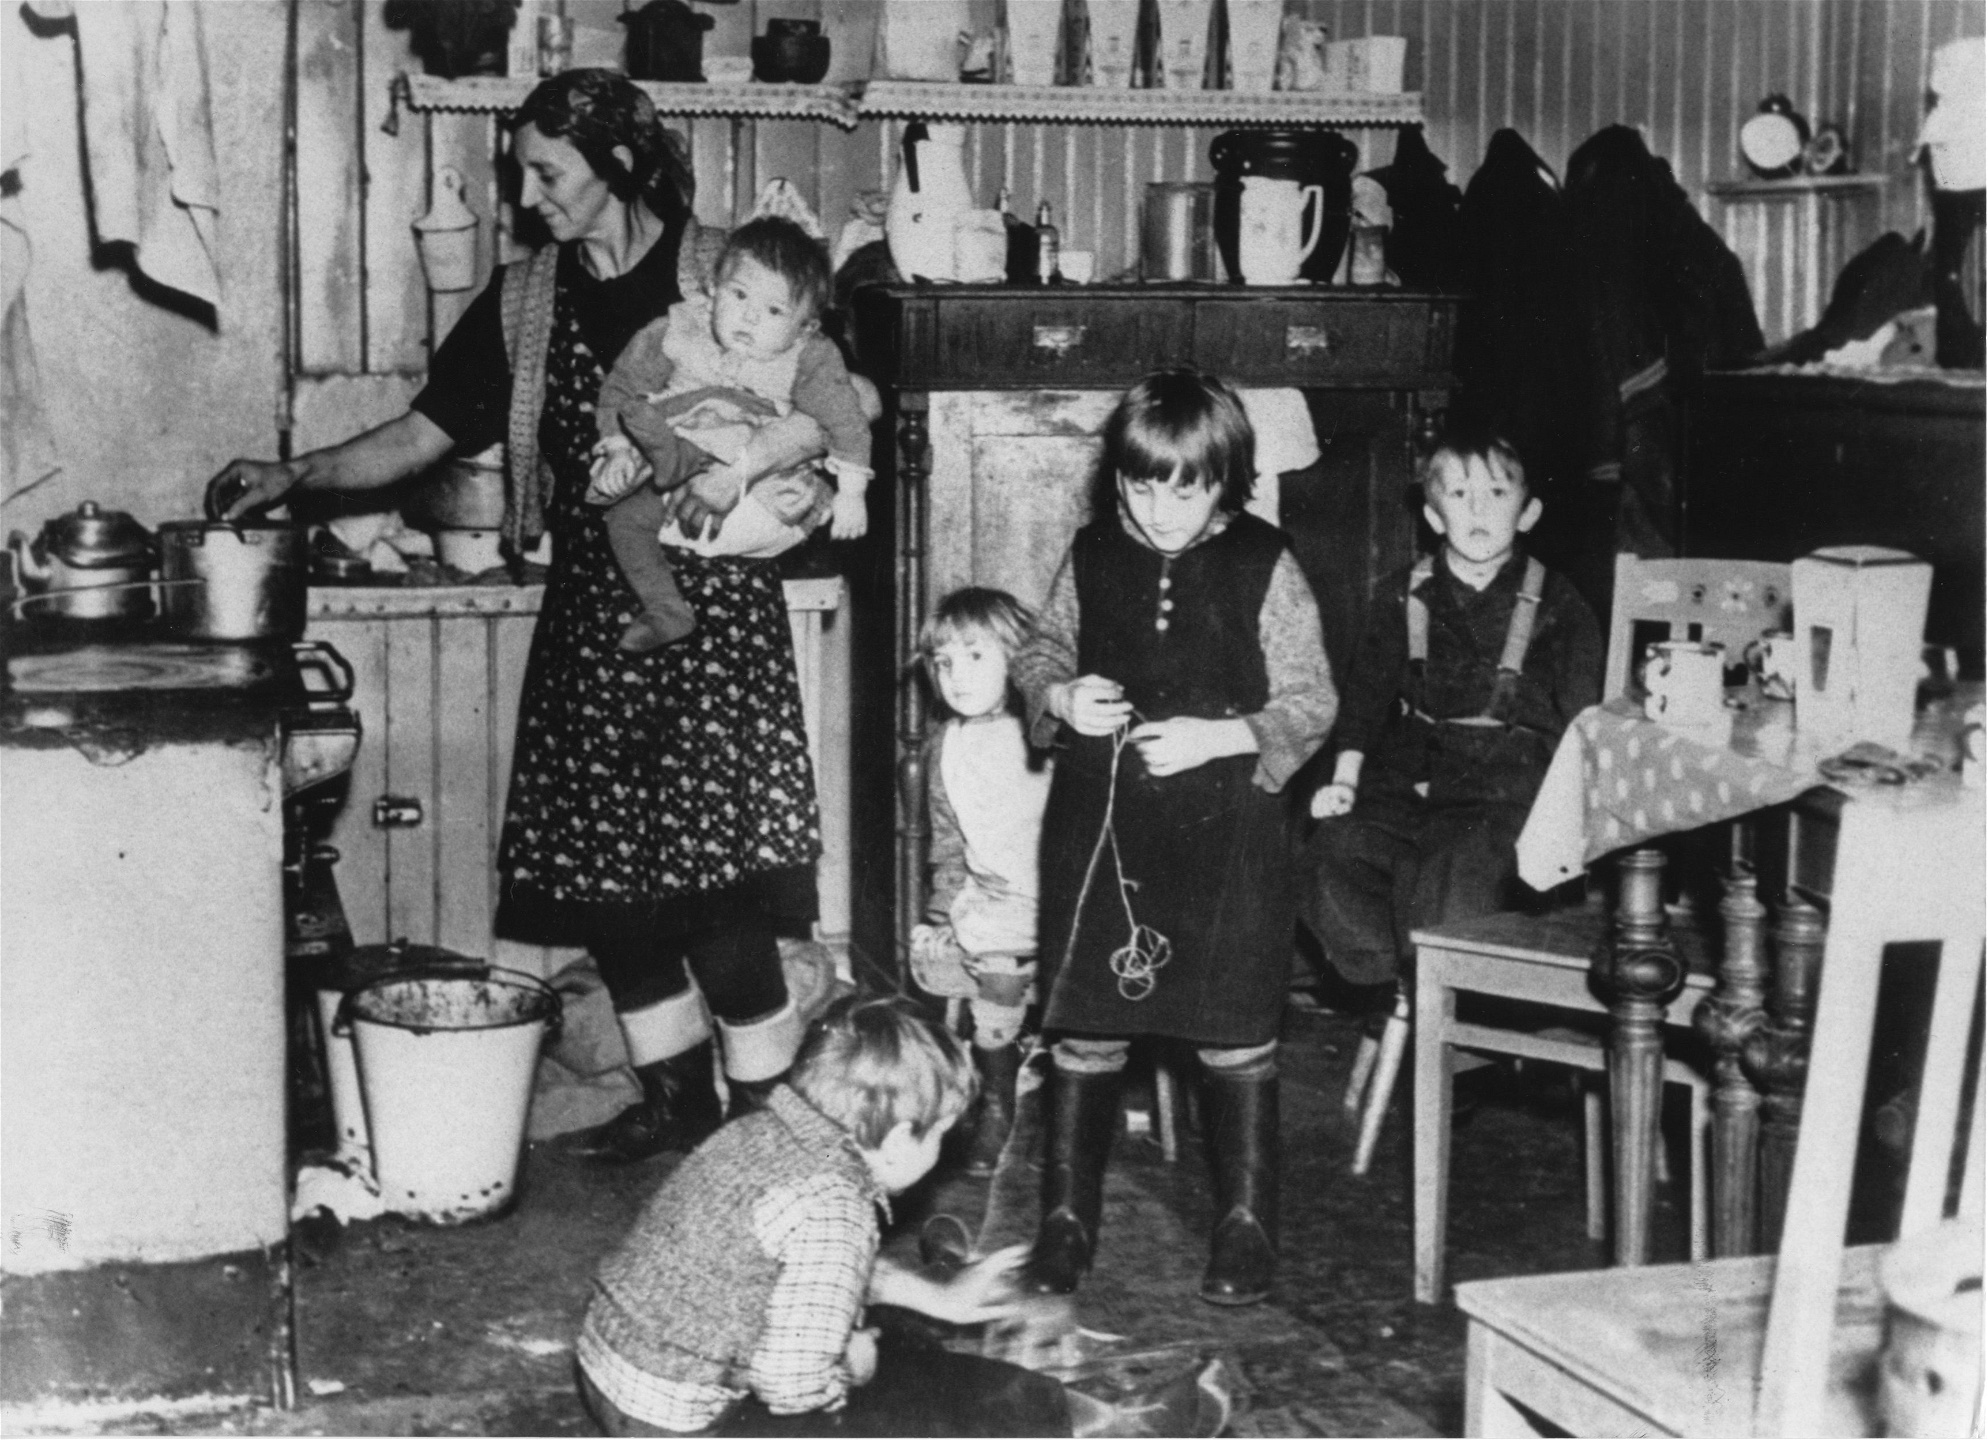 Arbetarfamilj i Stockholm på 1940-talet. En kvinna lagar mat på vedspisen, med ett barn på armen och fyra som leker på köksgolvet.